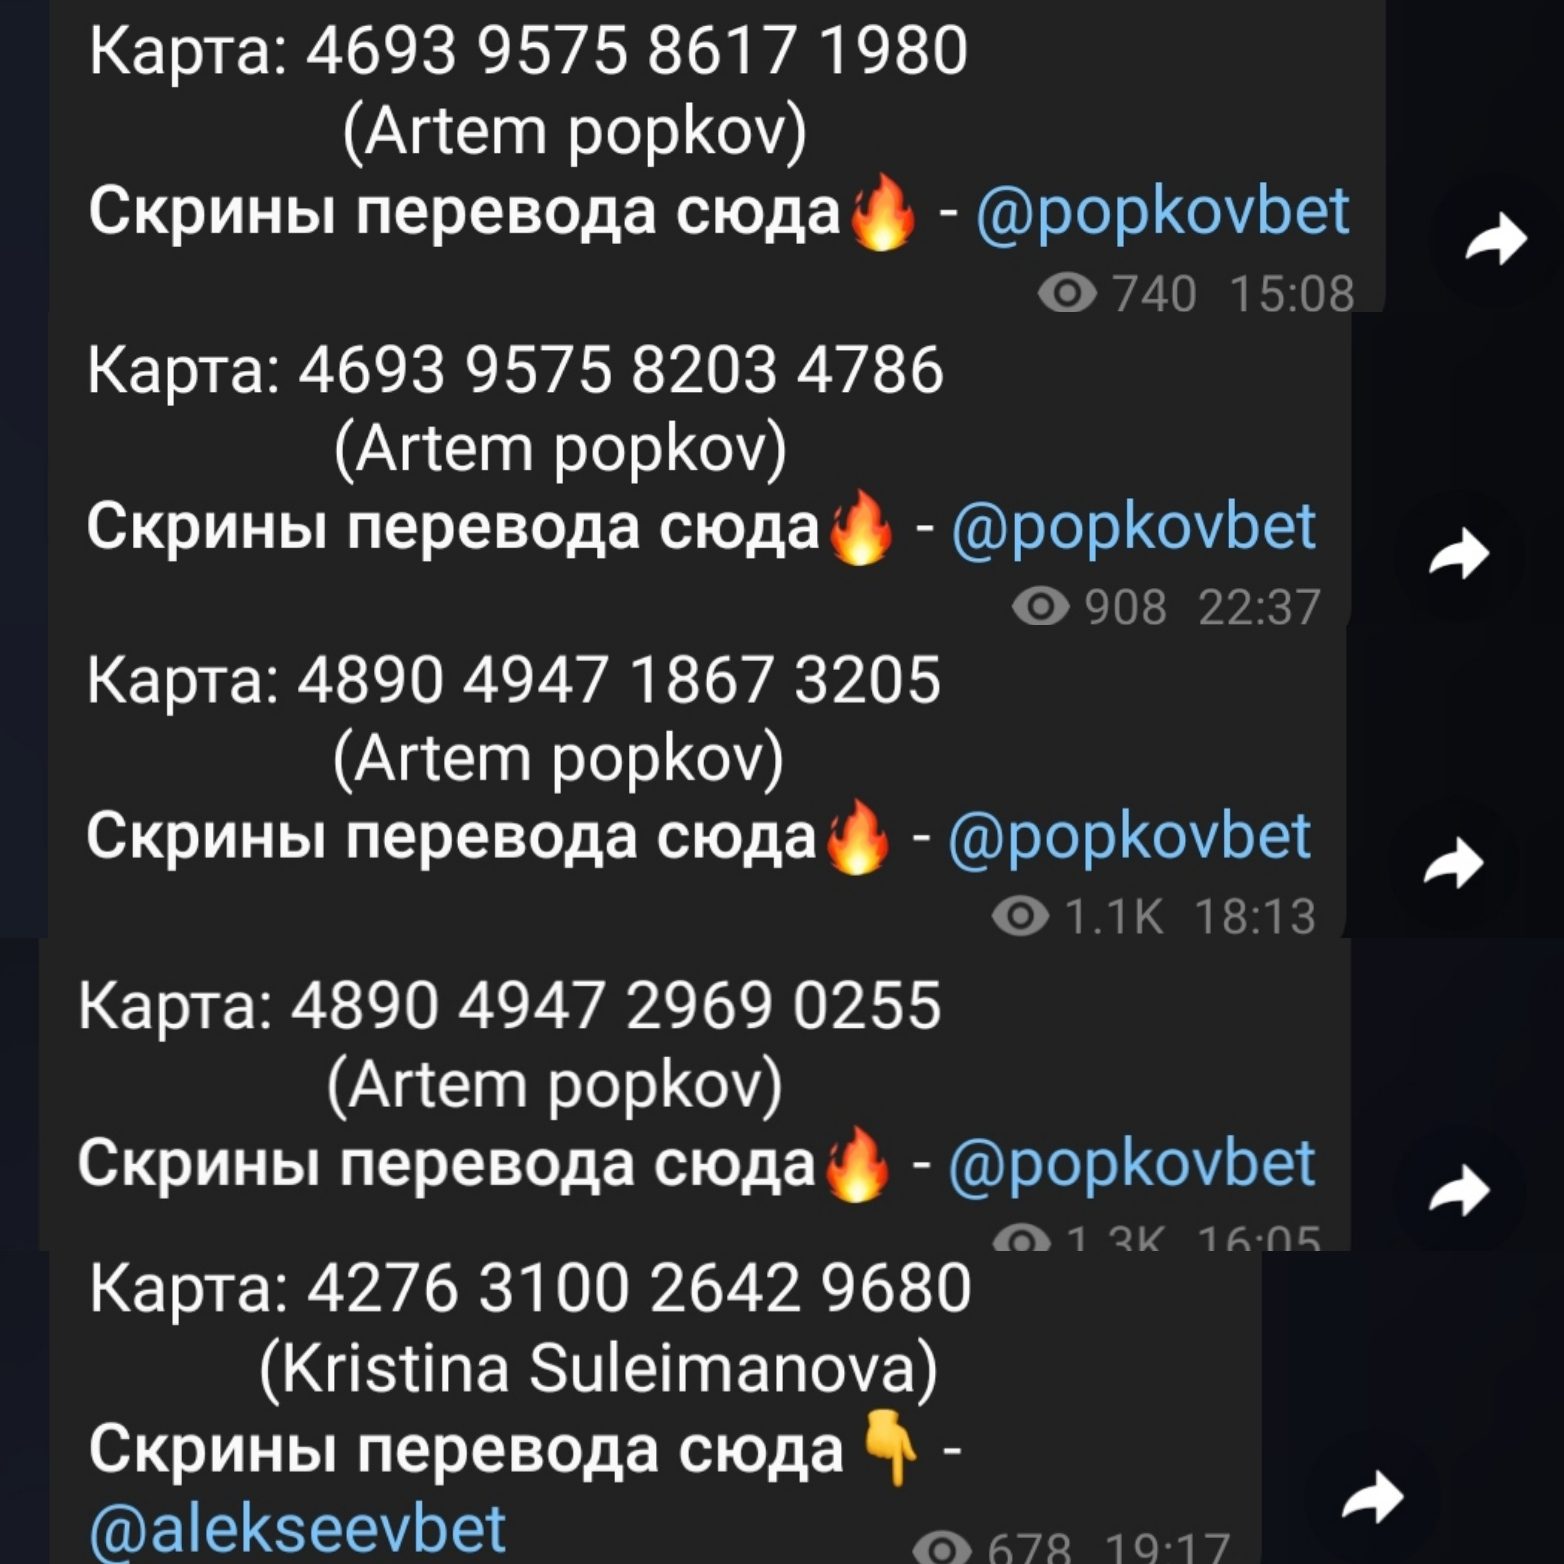 Скрины переводов в Телеграм Артём Попков будни миллионера